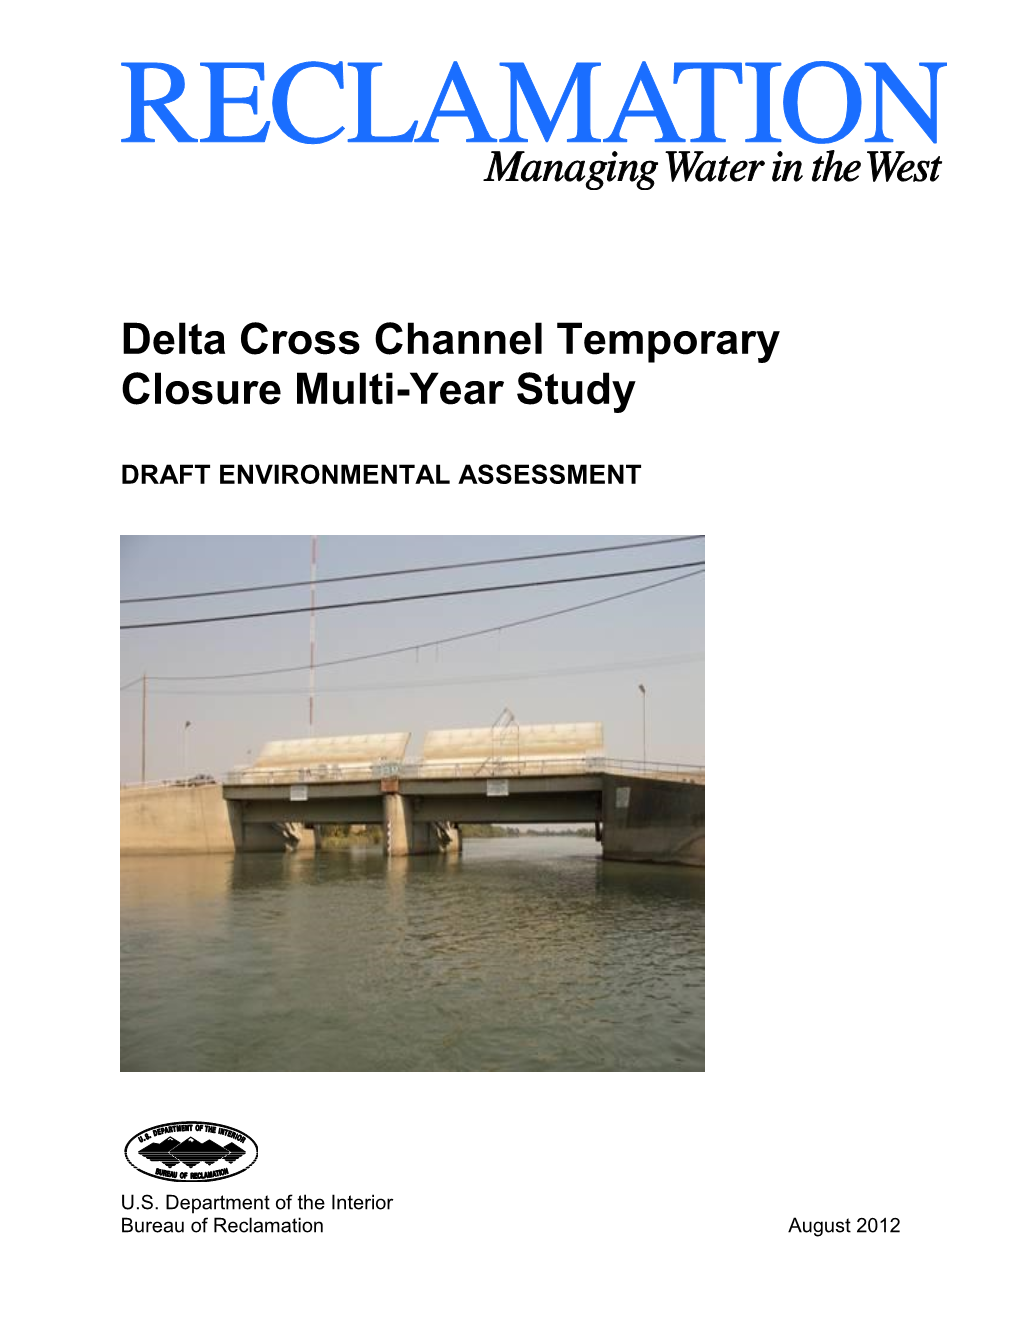 Delta Cross Channel Temporary Closure Multi-Year Study